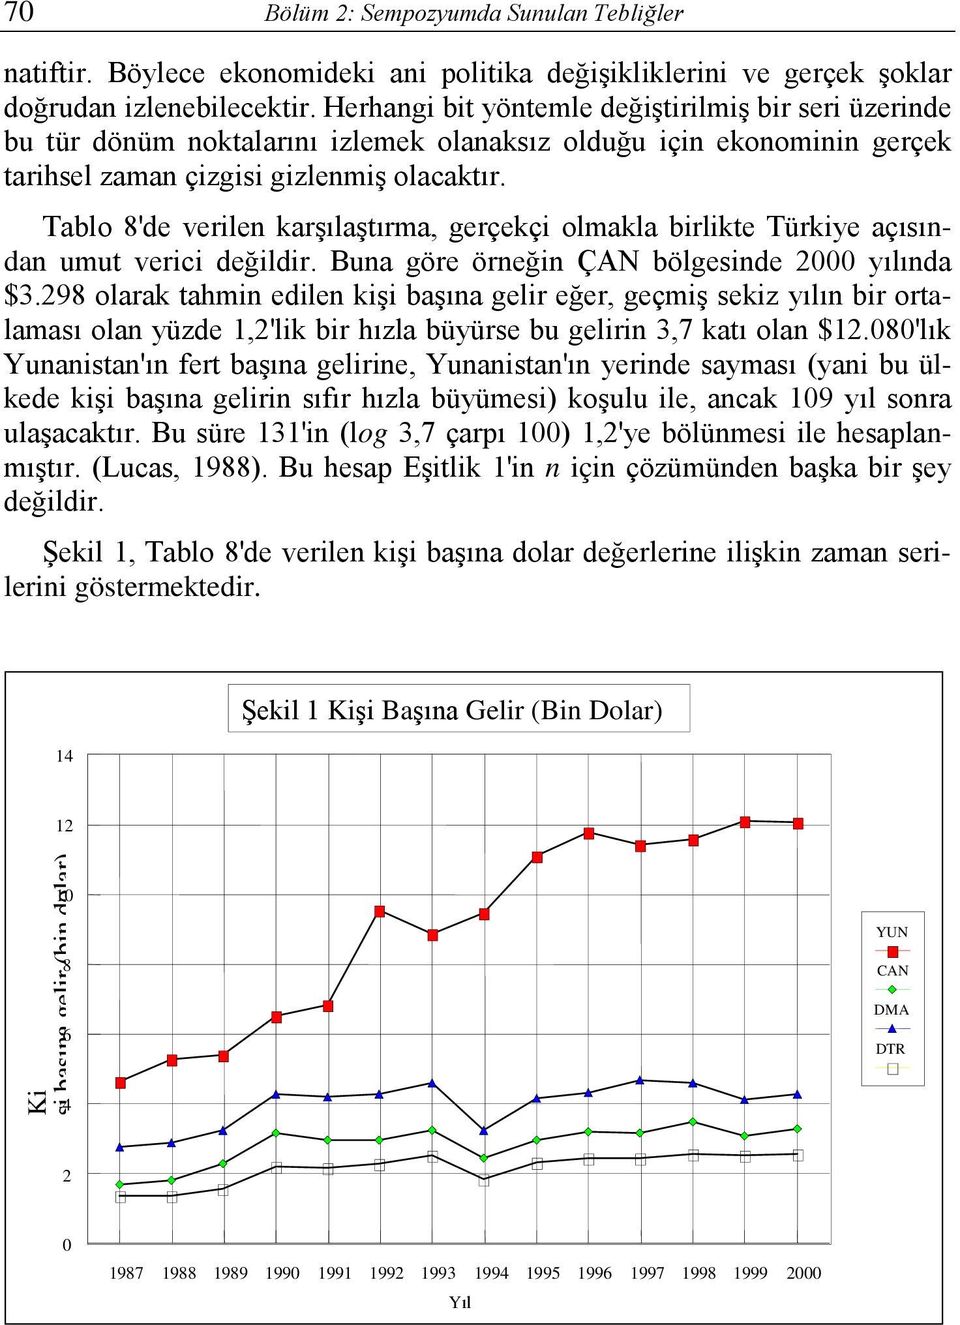 Tablo 8'de verilen karşılaştırma, gerçekçi olmakla birlikte Türkiye açısından umut verici değildir. Buna göre örneğin ÇAN bölgesinde 2000 yılında $3.